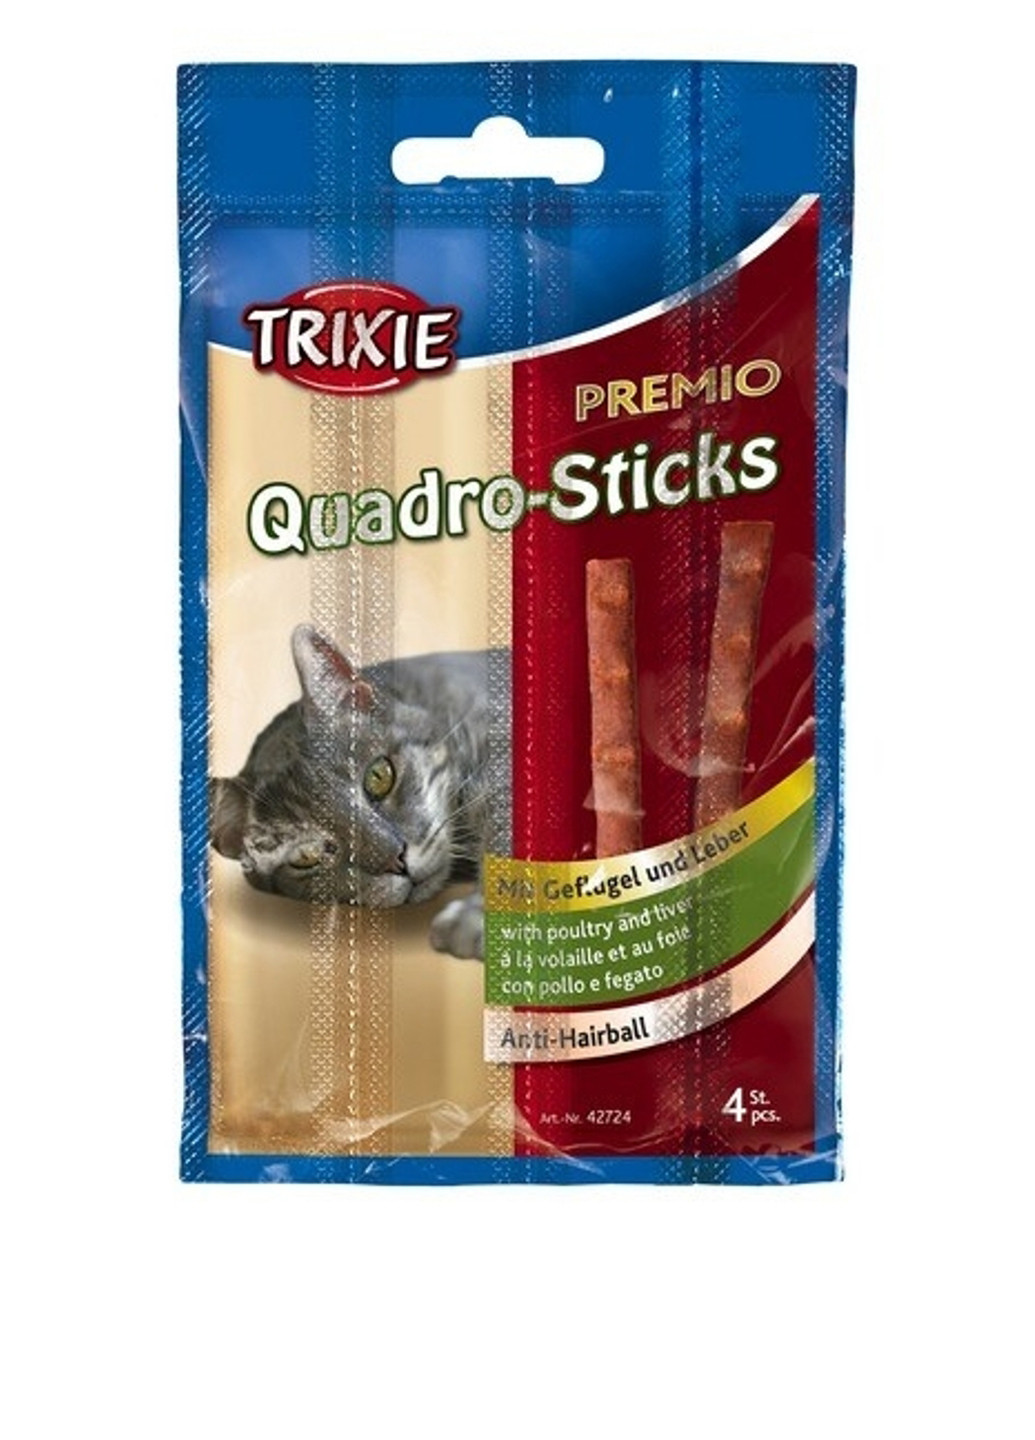 Палочки "PREMIO Quadro-Sticks", 4 шт*5 гр Trixie (17742260)